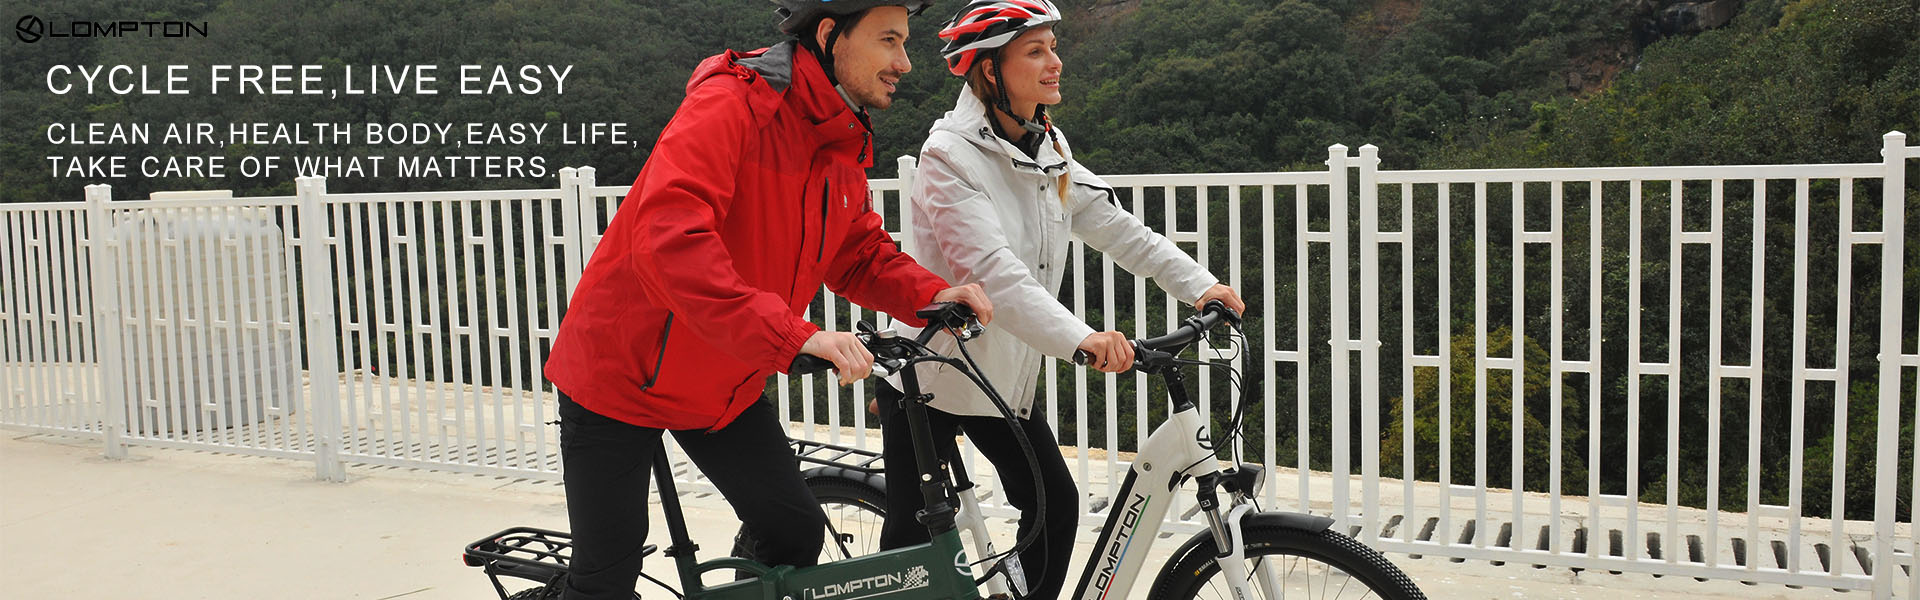 электронные велосипеды, электрические велосипеды, мопед,Shenzhen Ludon Technologies CO.,LTD